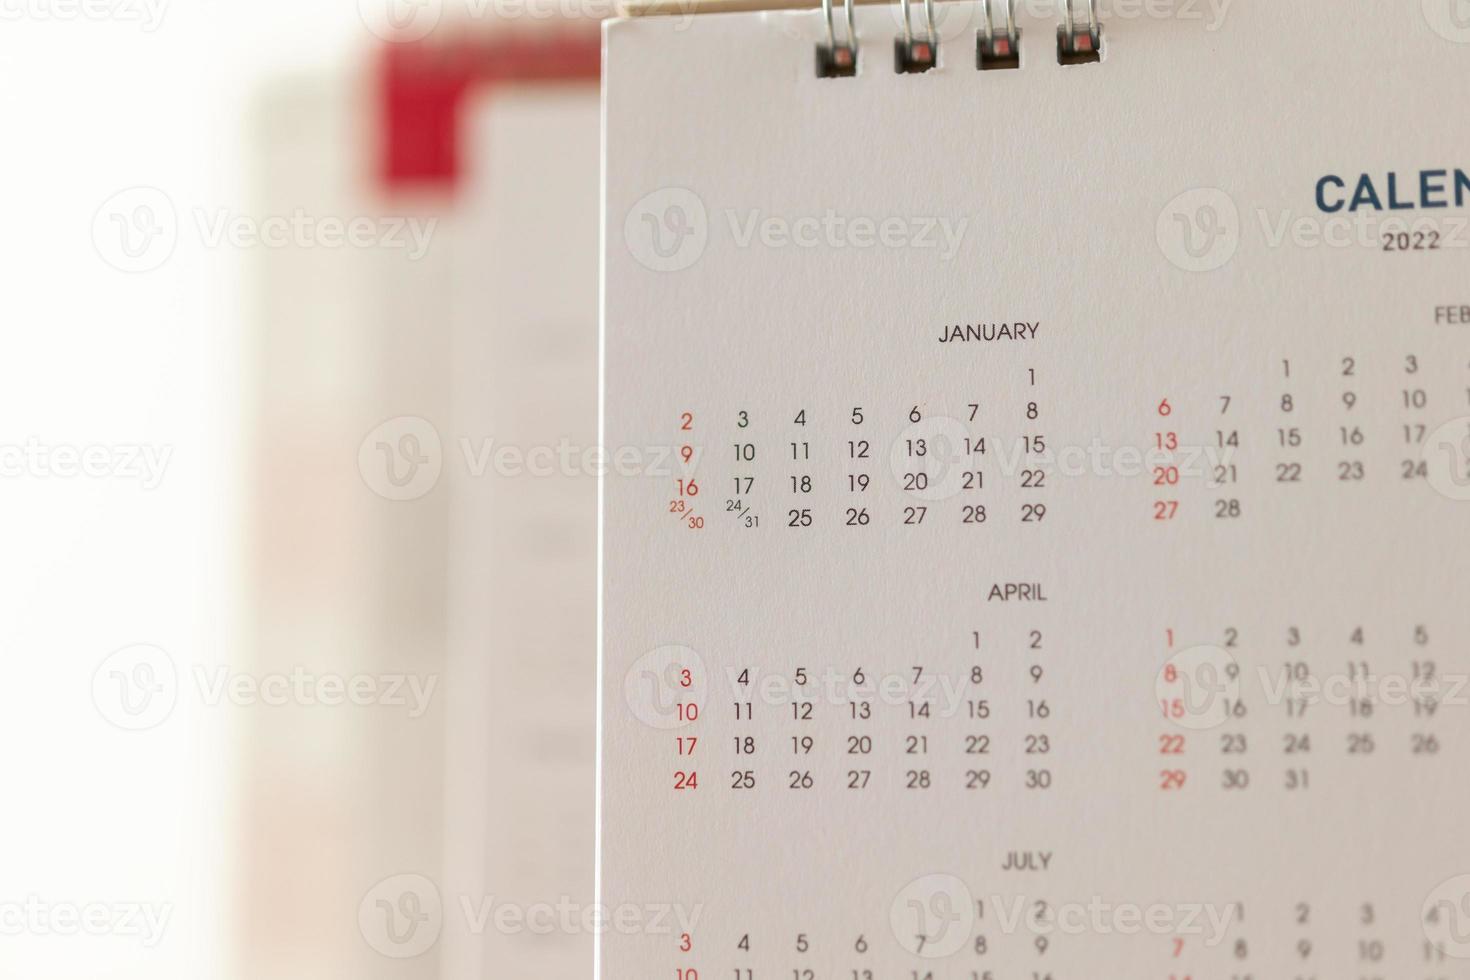 Schließen Sie herauf Kalenderseitendaten und Monatshintergrund Geschäftsplanungstermin-Besprechungskonzept foto